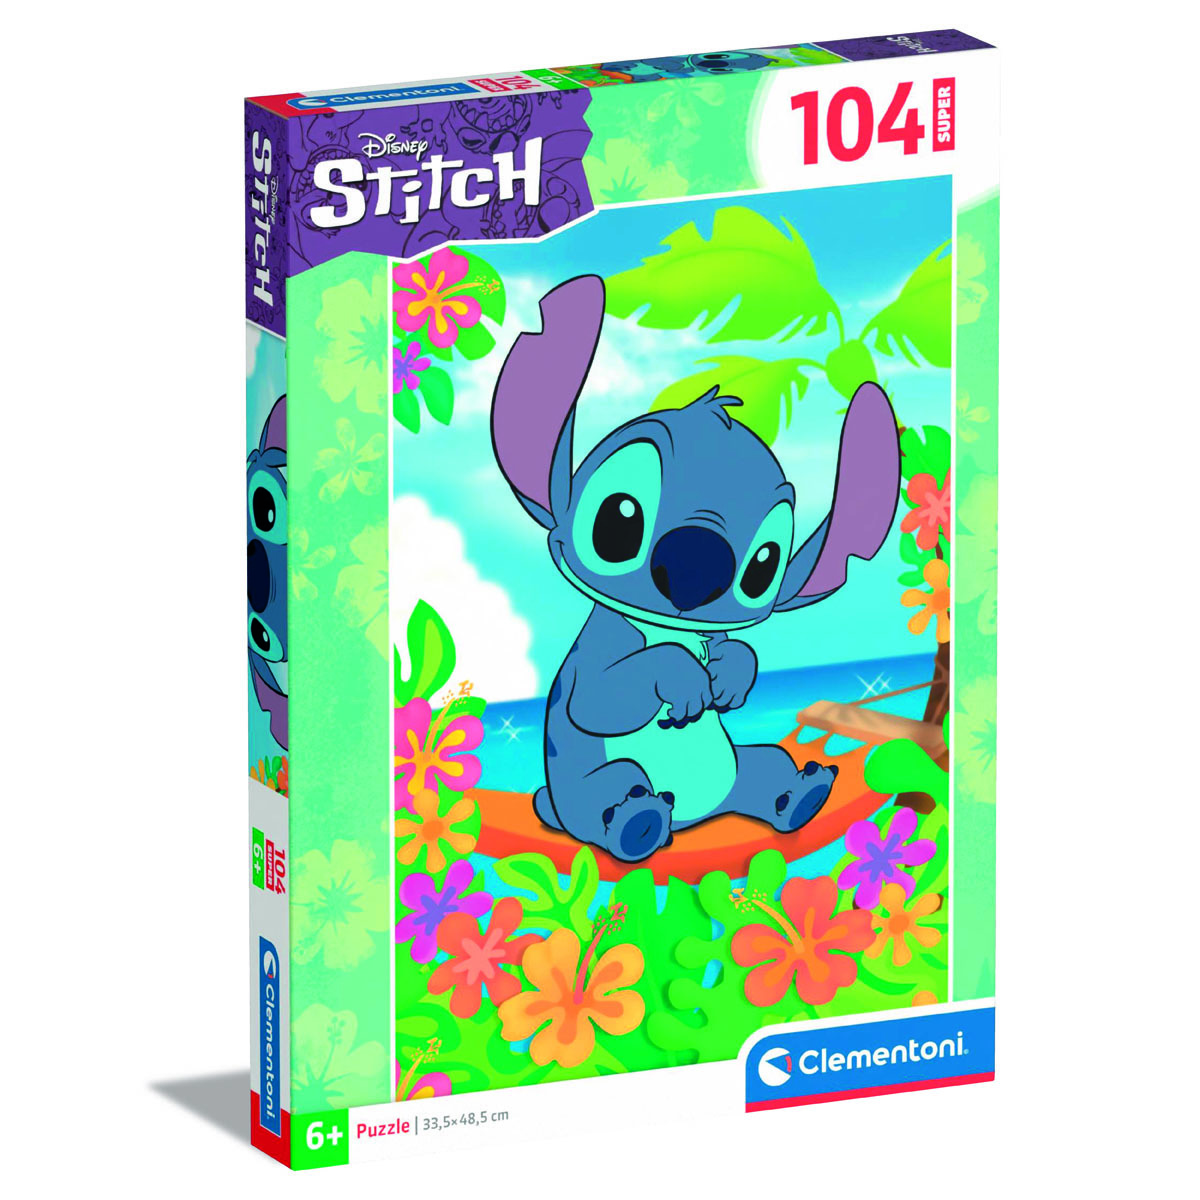 Clementoni - Lilo & Stitch Puzzle 104 Pieces